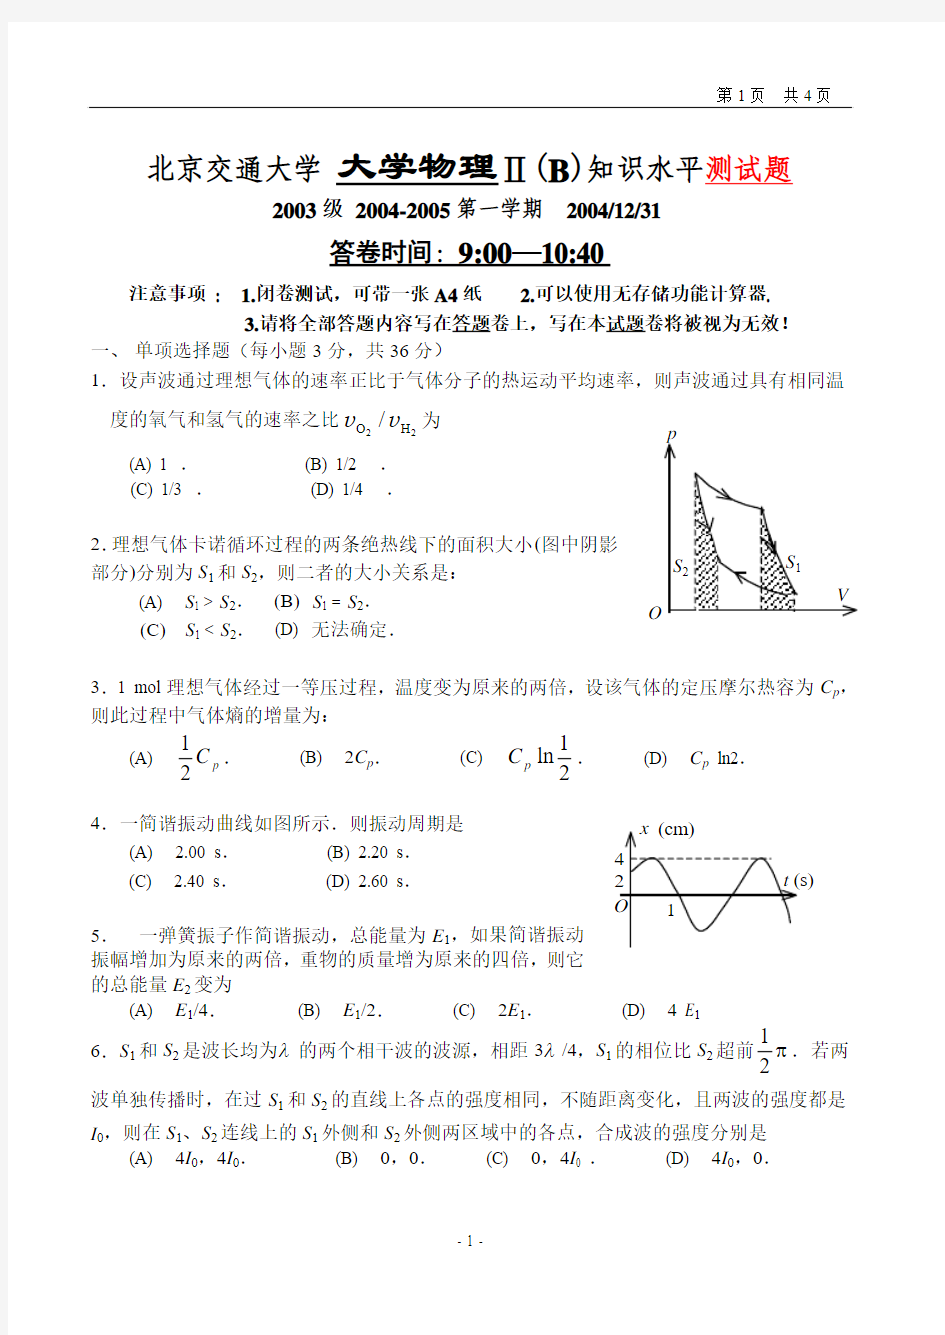 北京交通大学 大学物理Ⅱ(B)试卷及答案